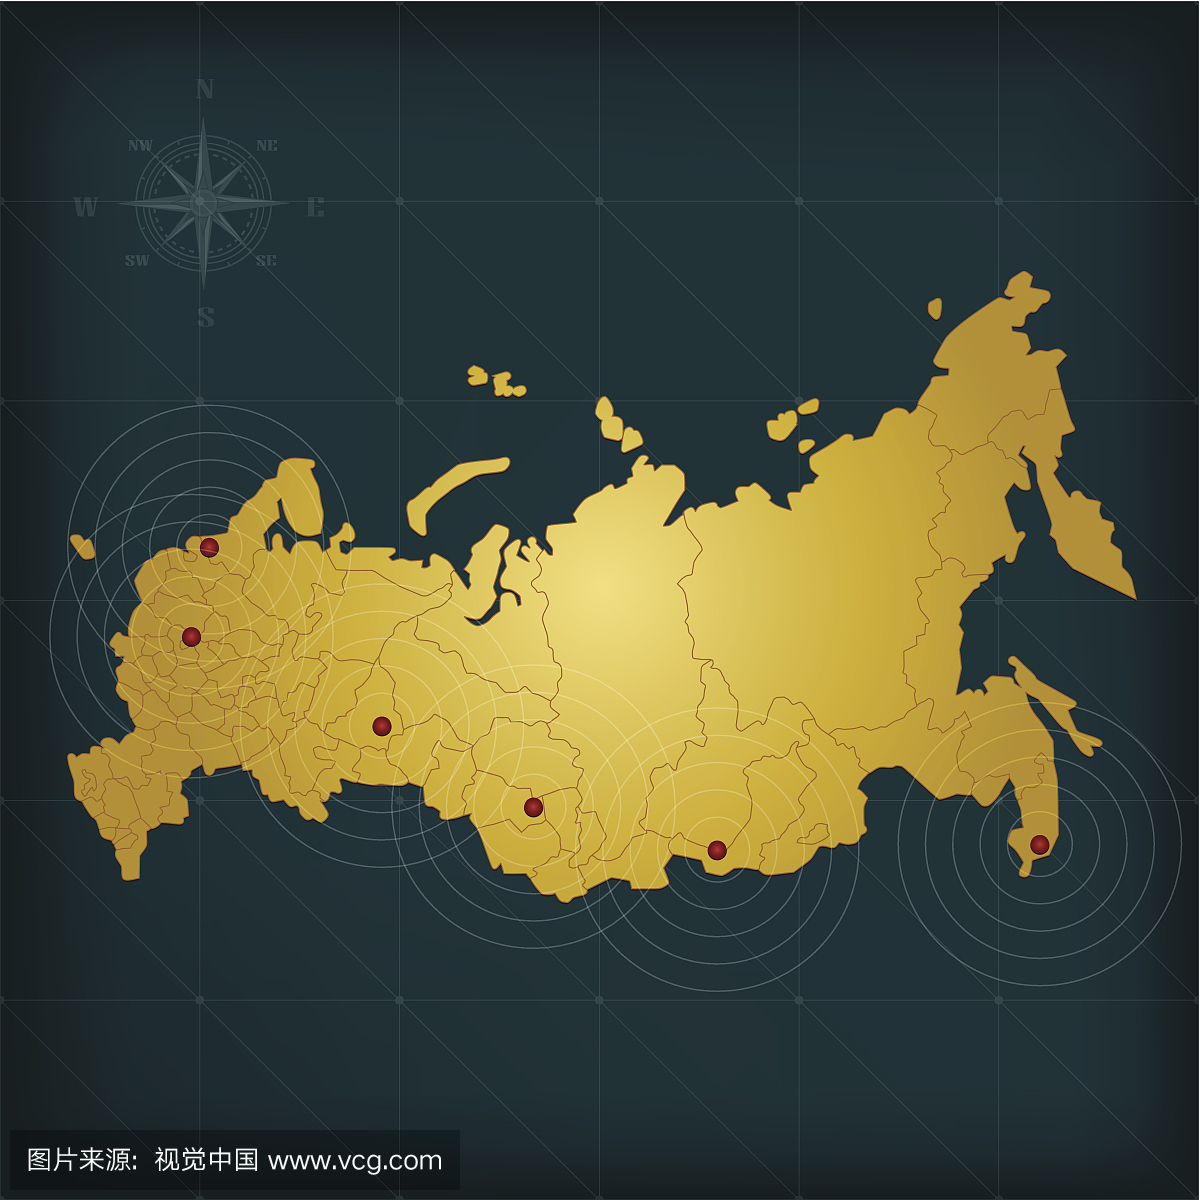 俄罗斯地图在黑暗的背景与网格和标记